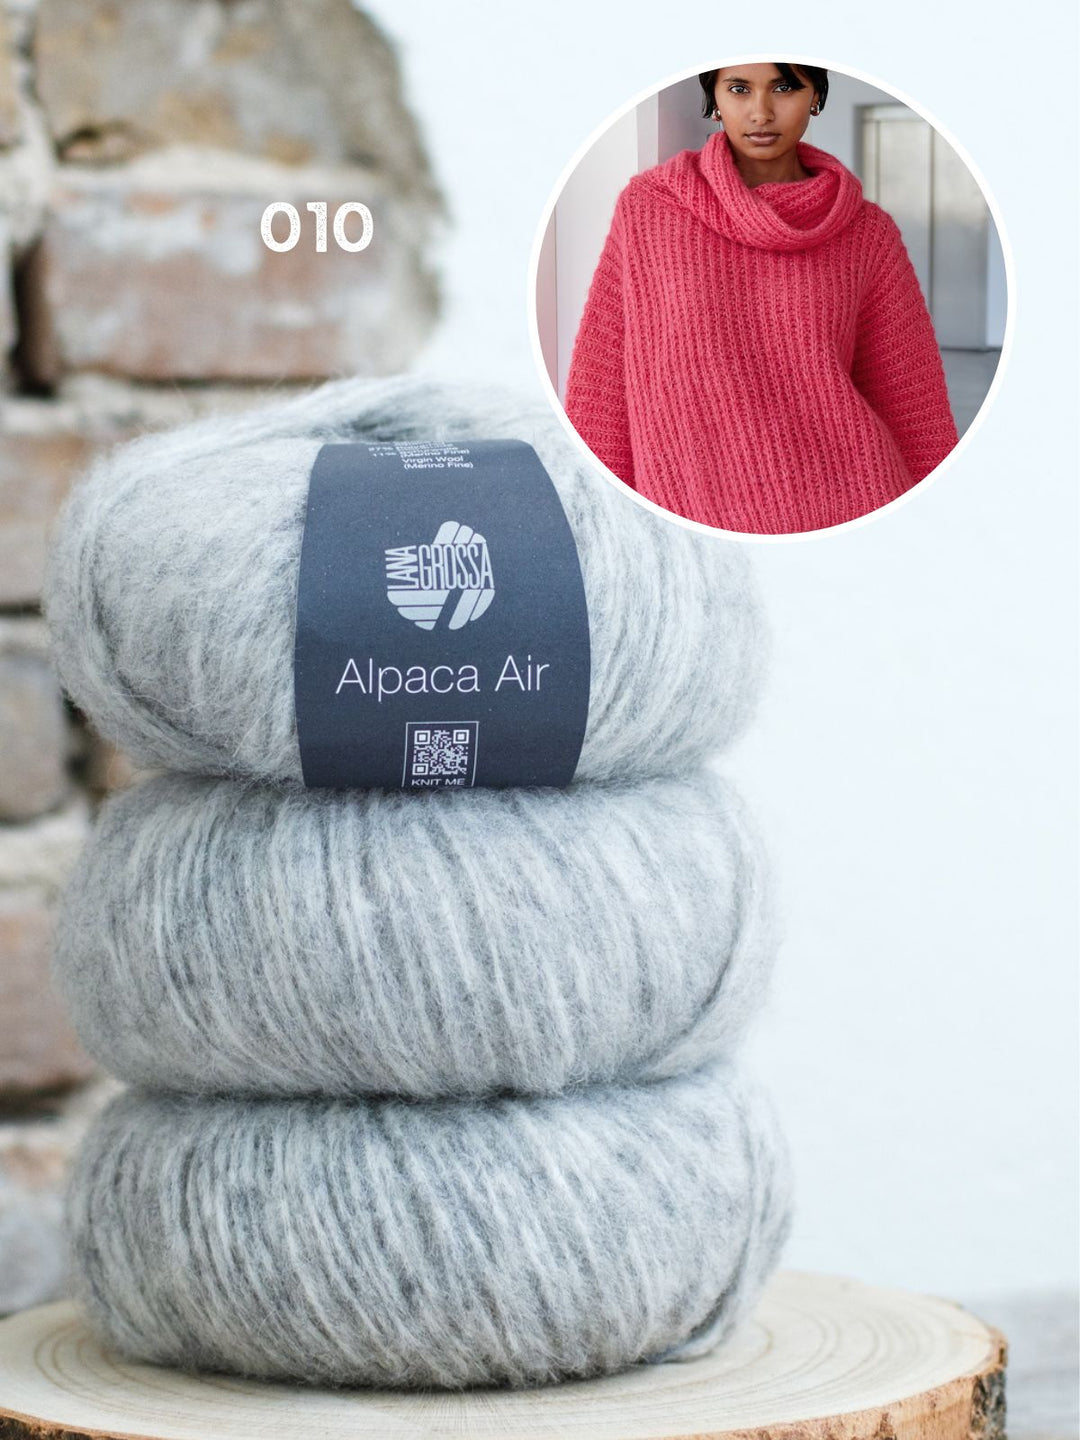 Breipakket Alpaca Air pullover in halve patentsteek